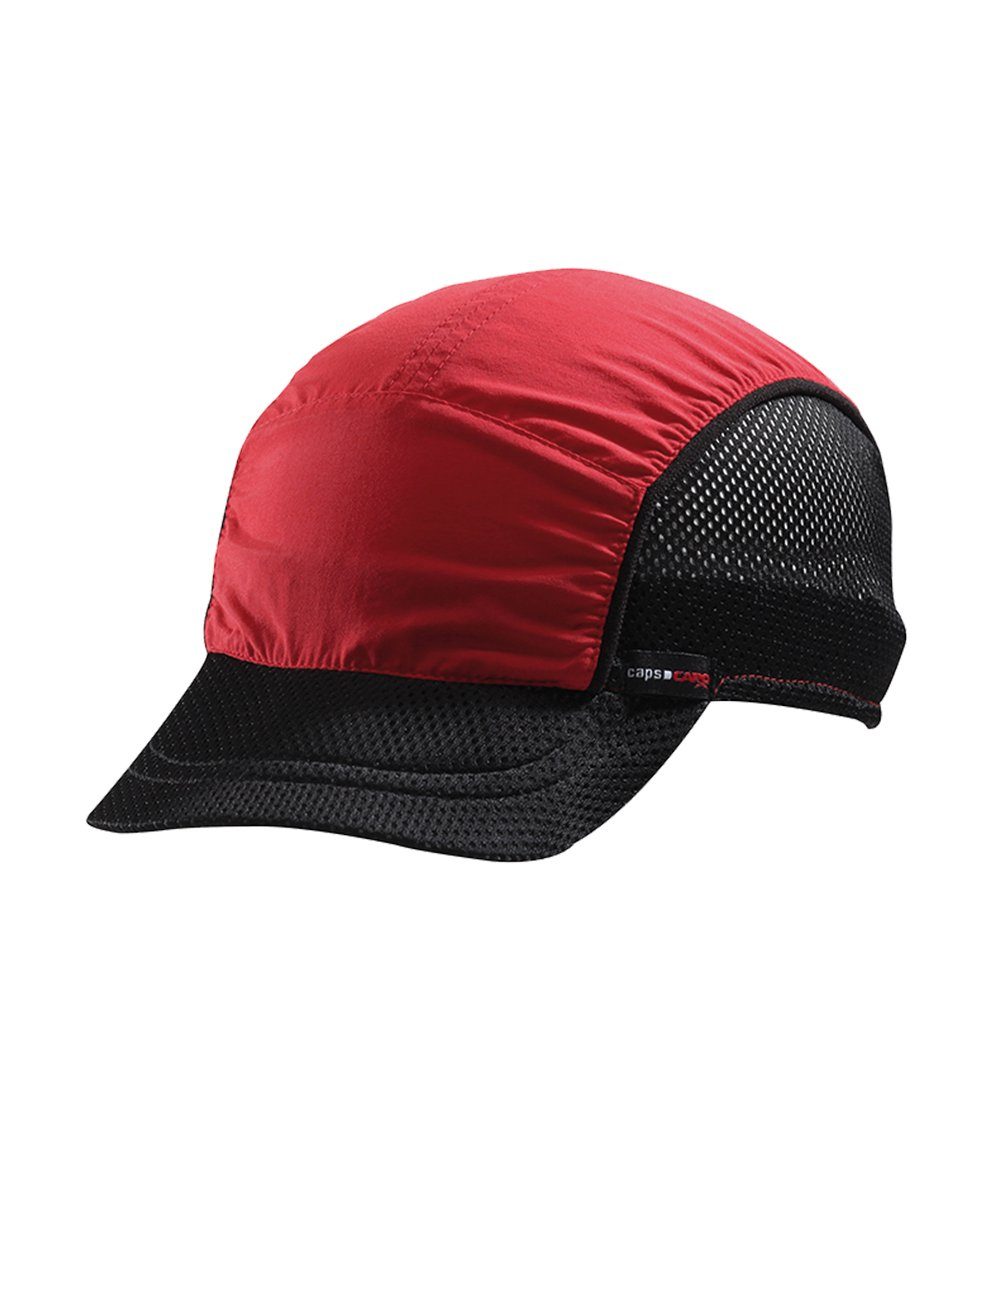 CAPO Baseball Cap Softcap, ultraleicht seitliche Netzeinsätze, Refle Made in Europe pink